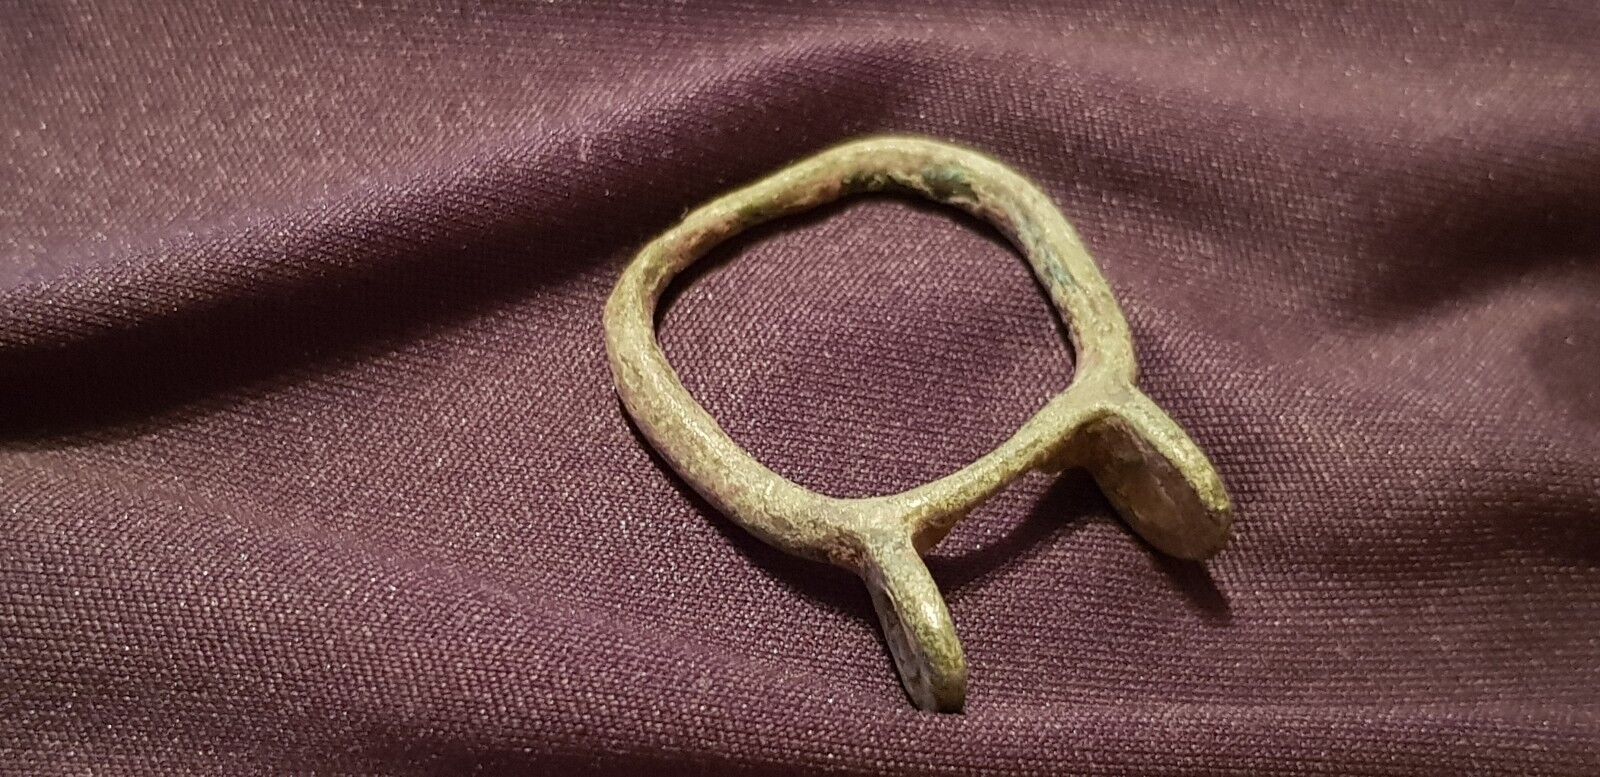 Superb A1 Con. very rare type Roman bronze buckle found in Britain 1960s L88a